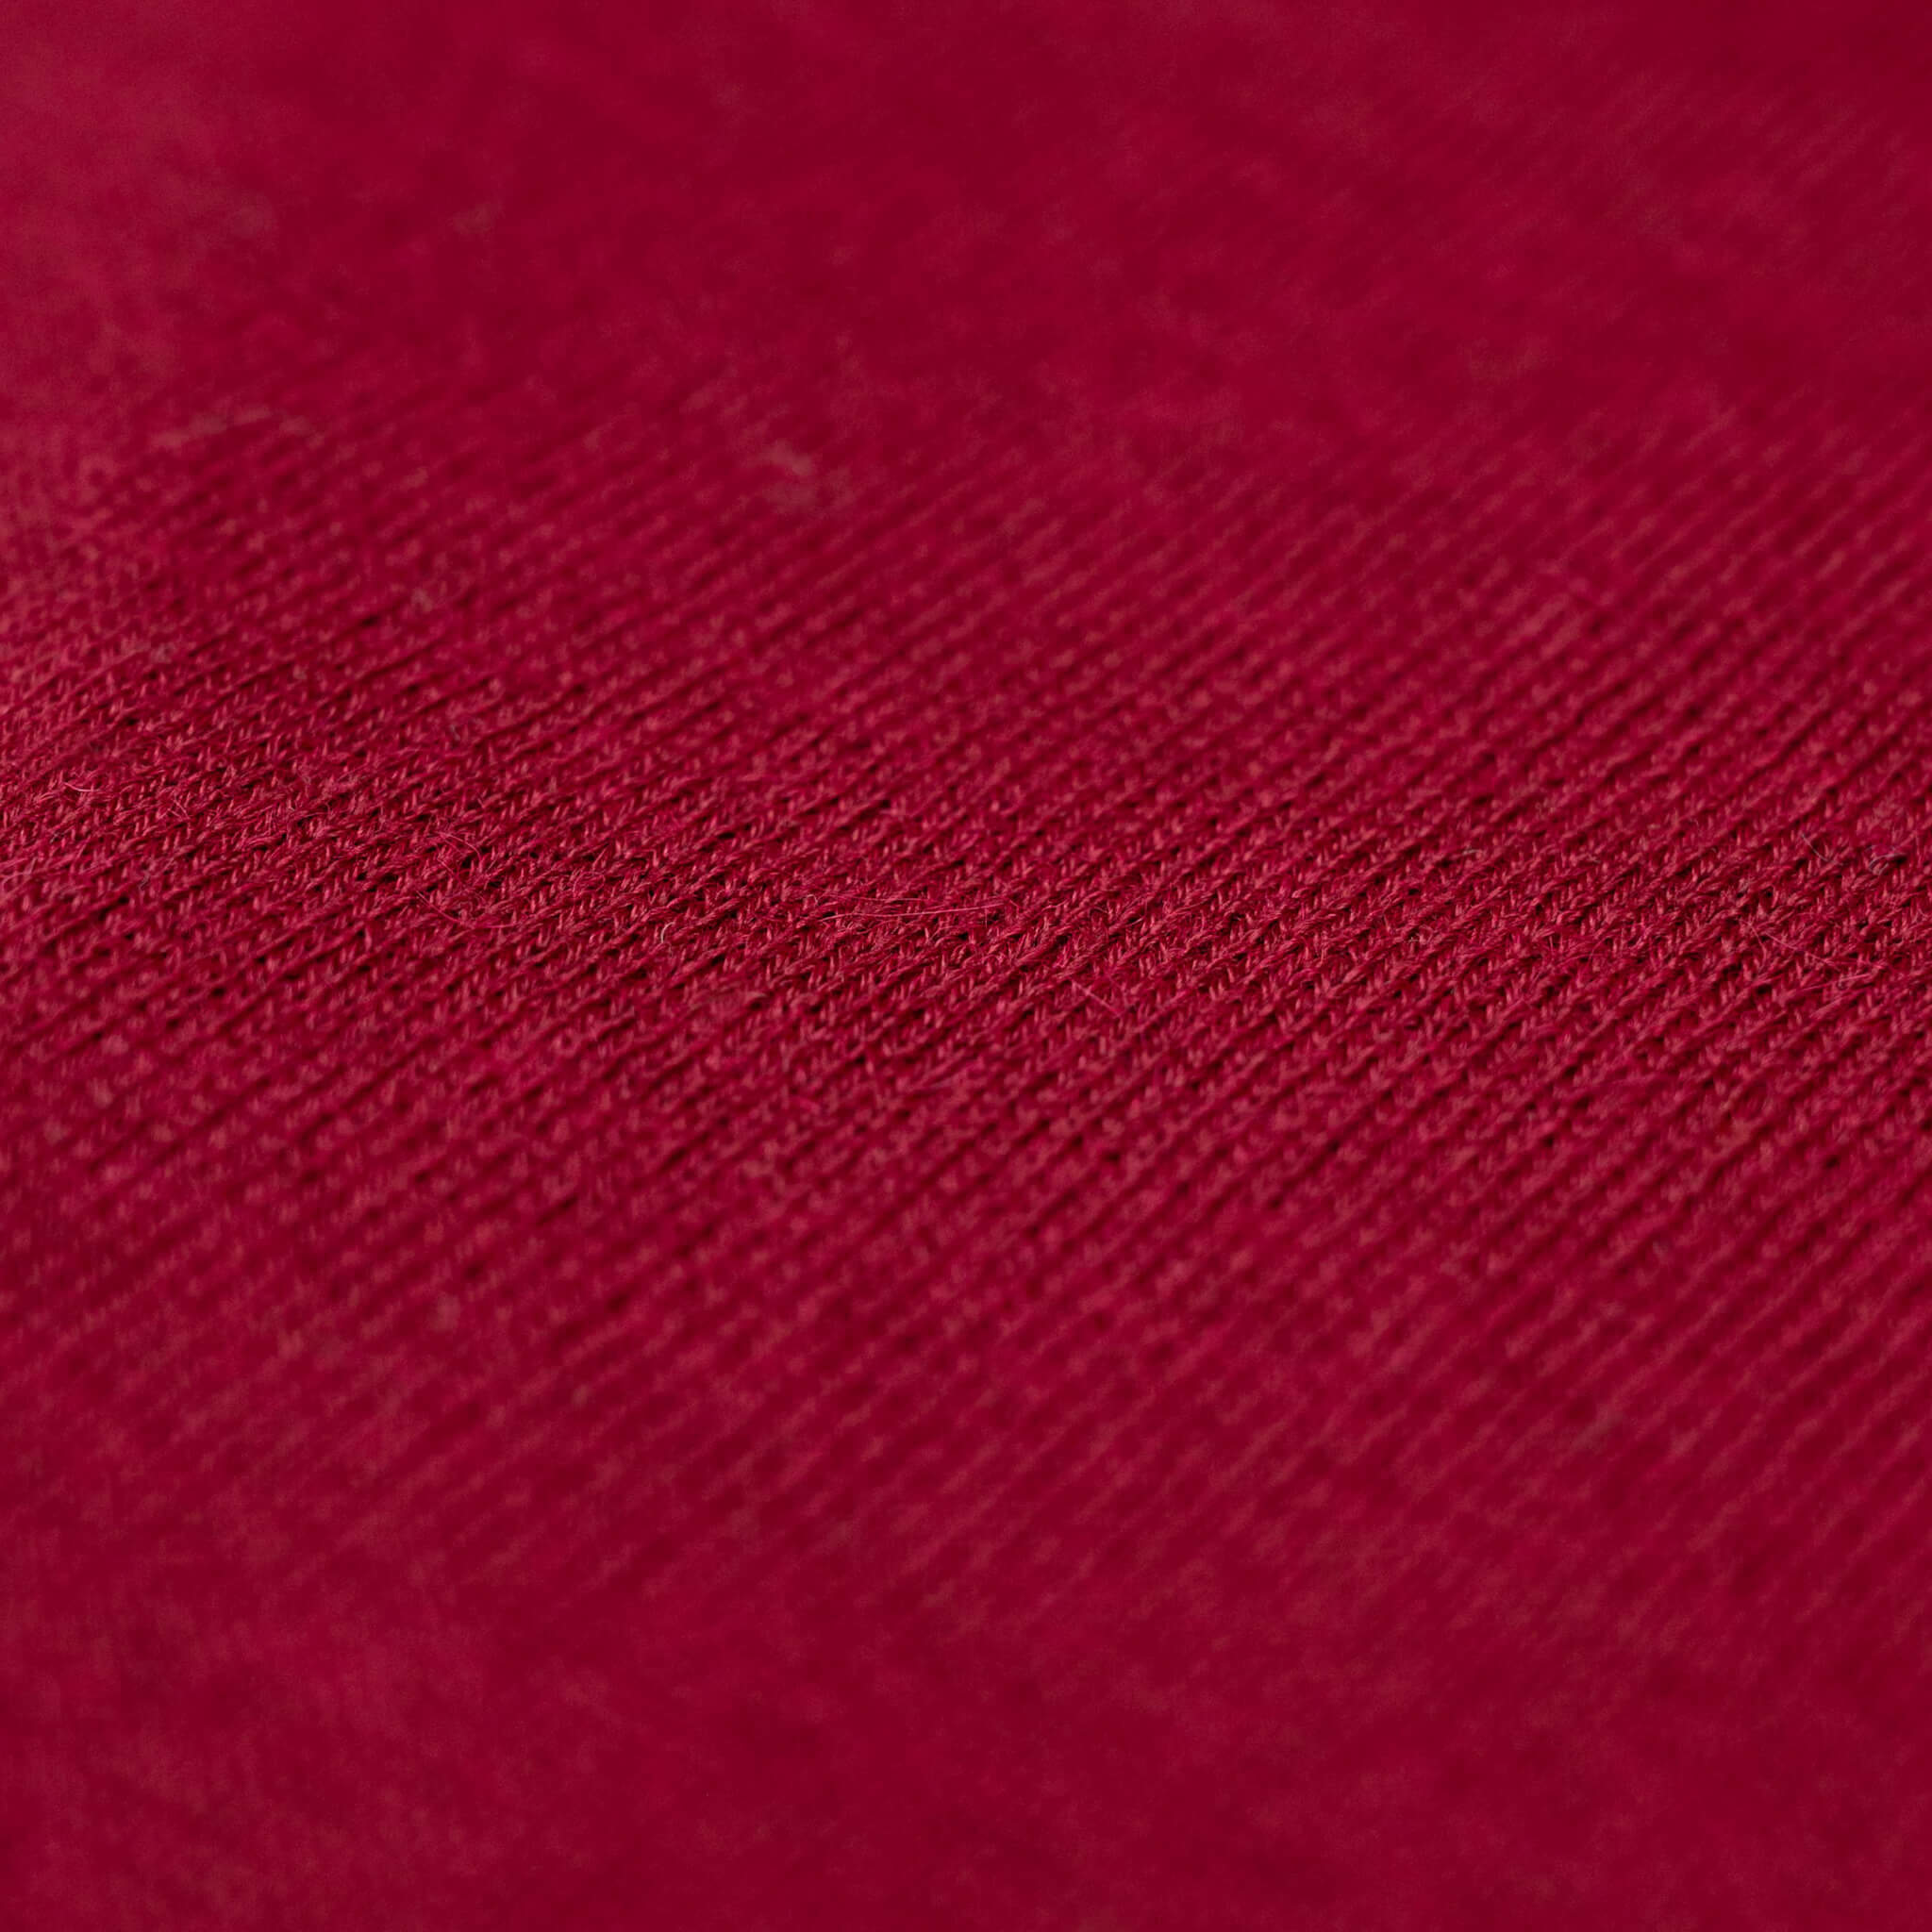 Alpaka Schal für Damen von Alpakin einfarbig in dunkelrot Textil